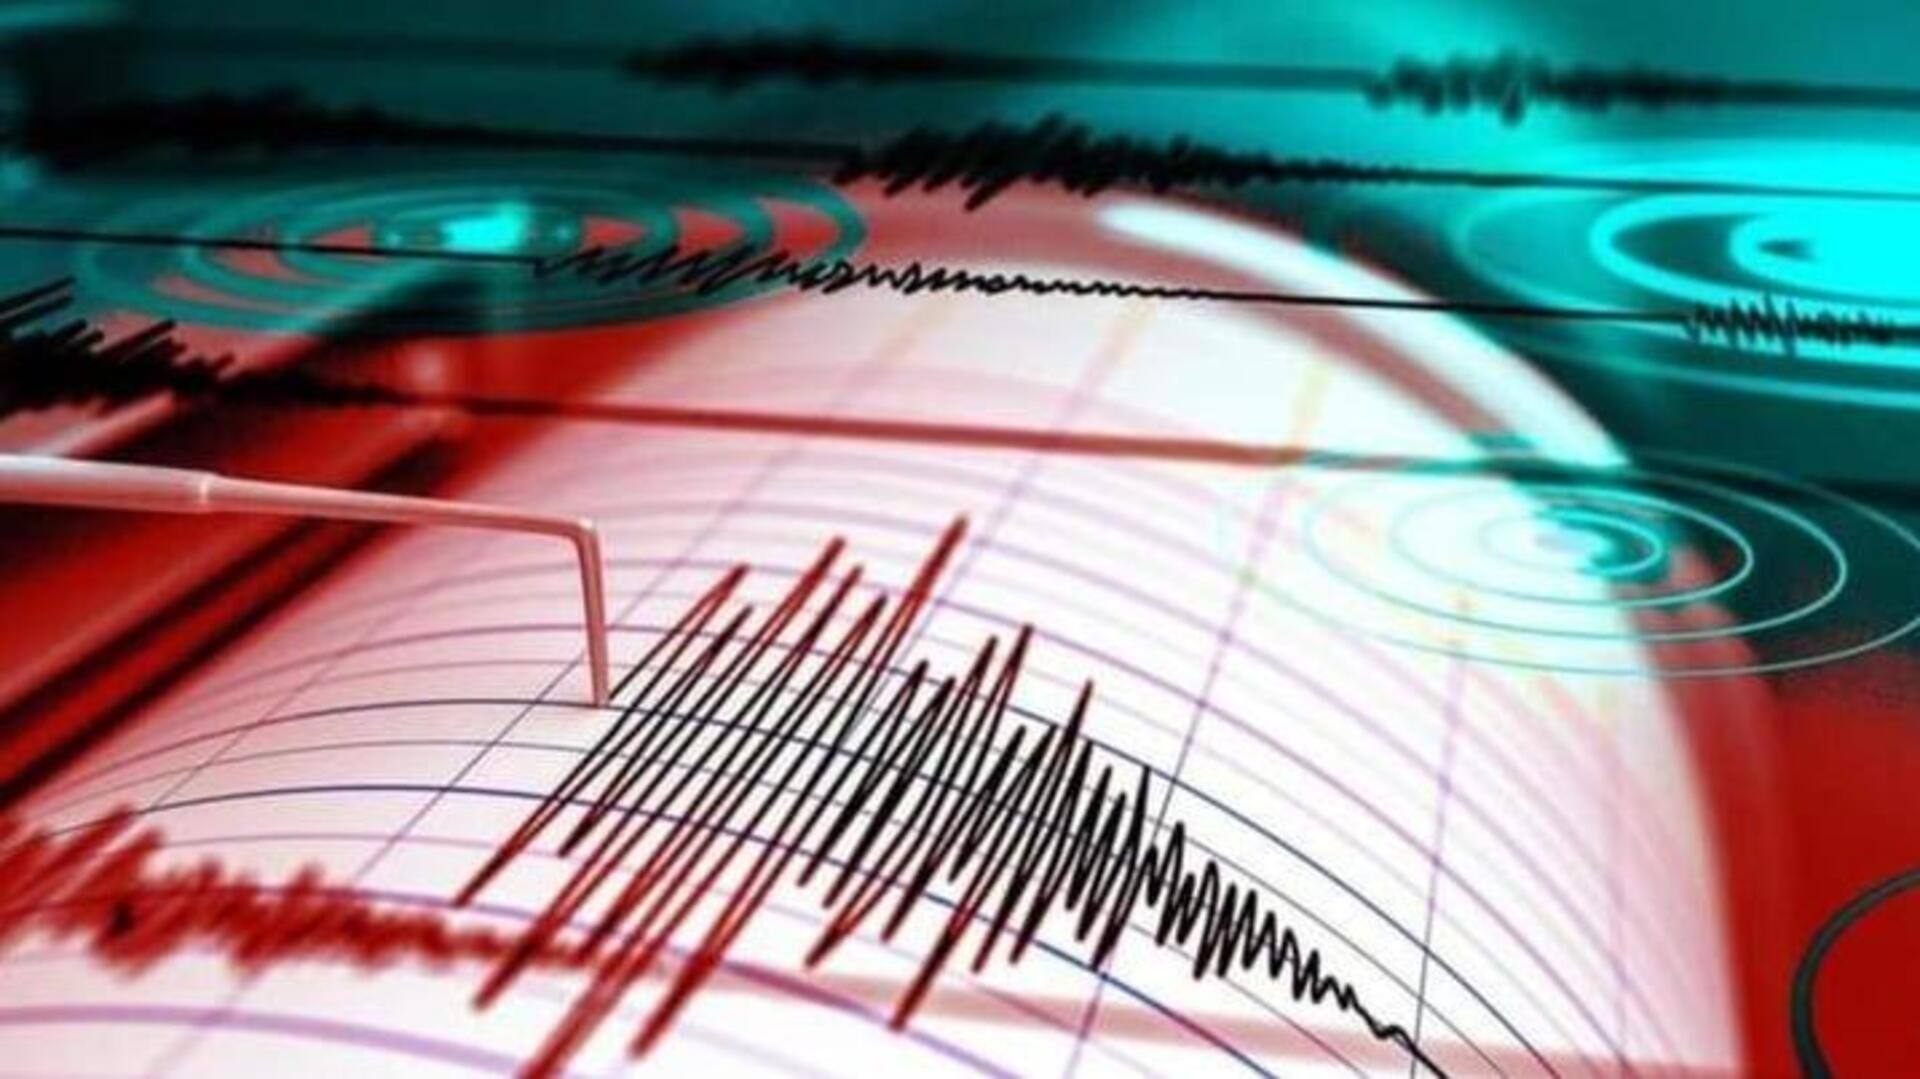 दिल्ली-NCR में भूकंप के झटके, रिक्टर स्केल पर 5.8 मापी गई तीव्रता